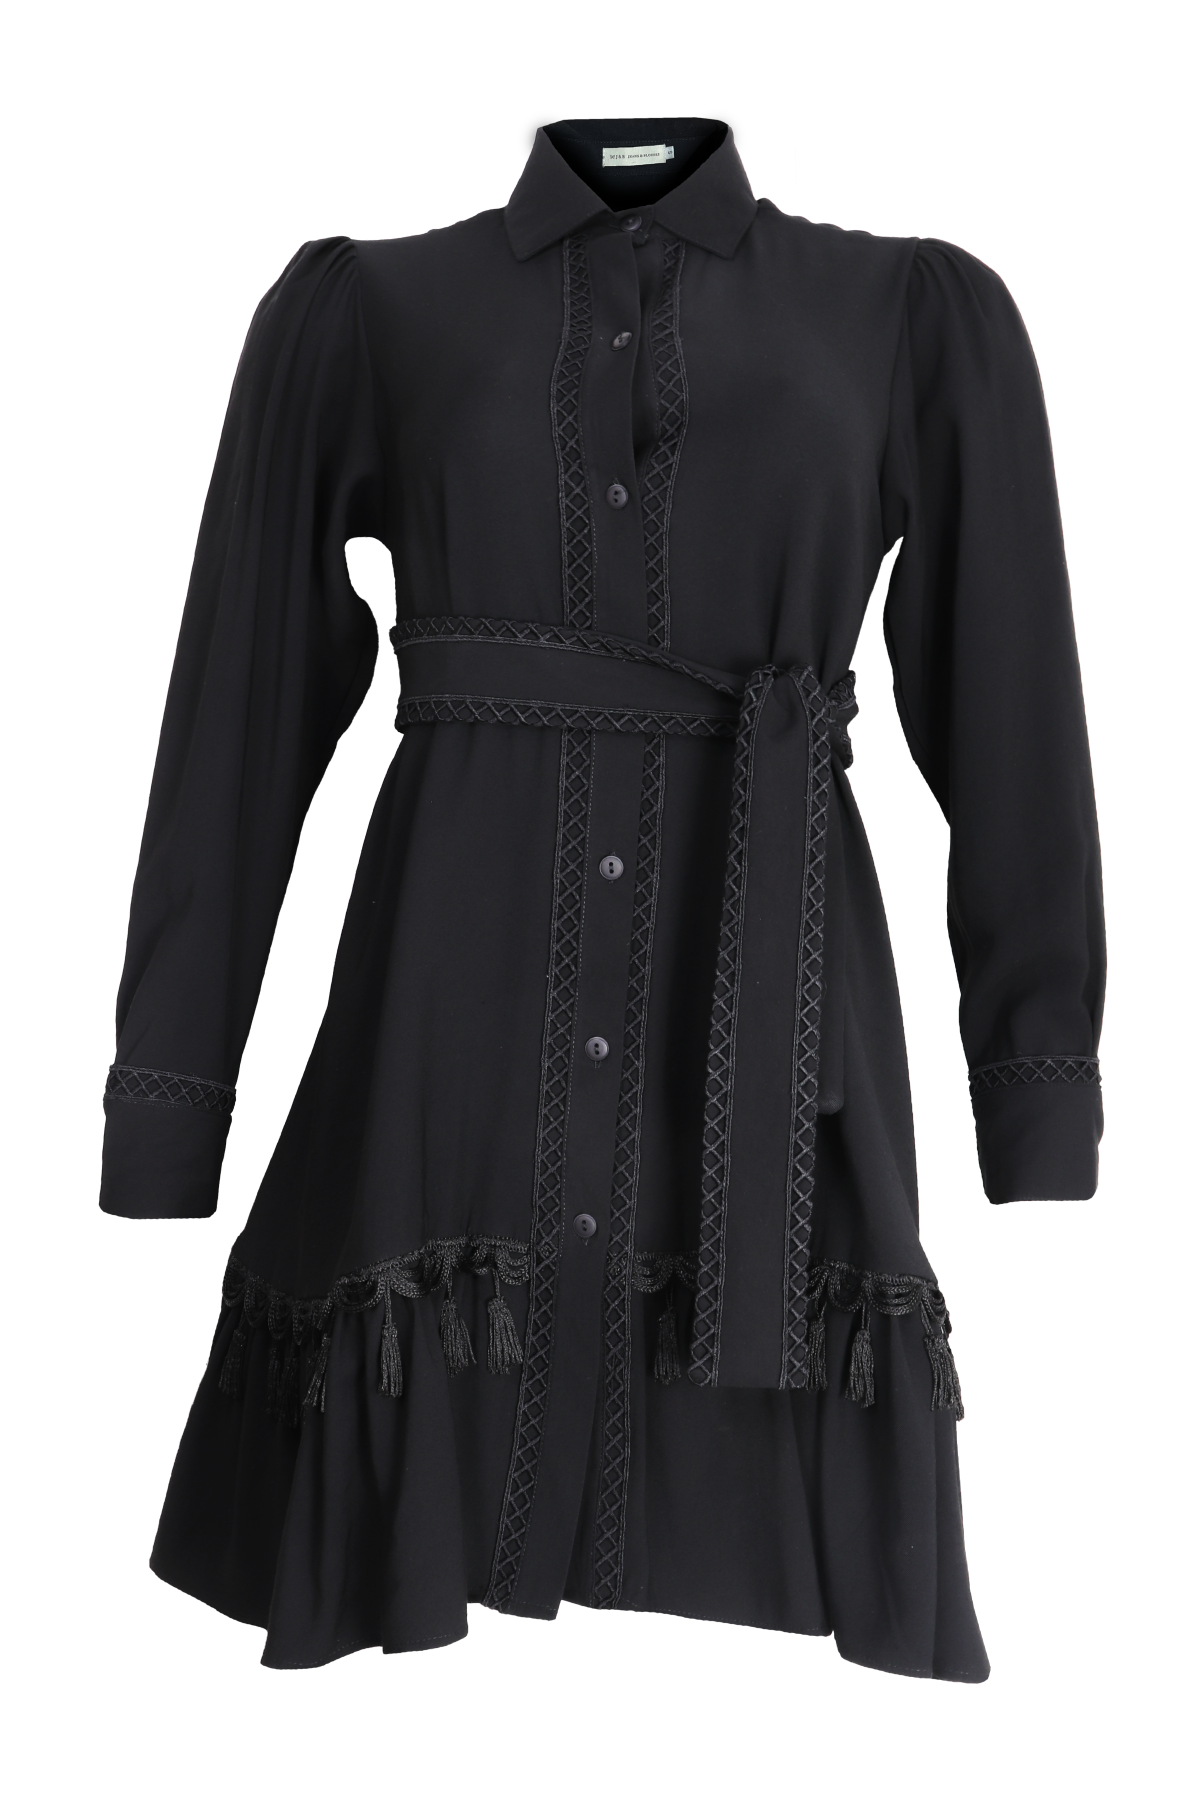 Hermoso vestido corto con mangas largas y cinturón bordado color negro